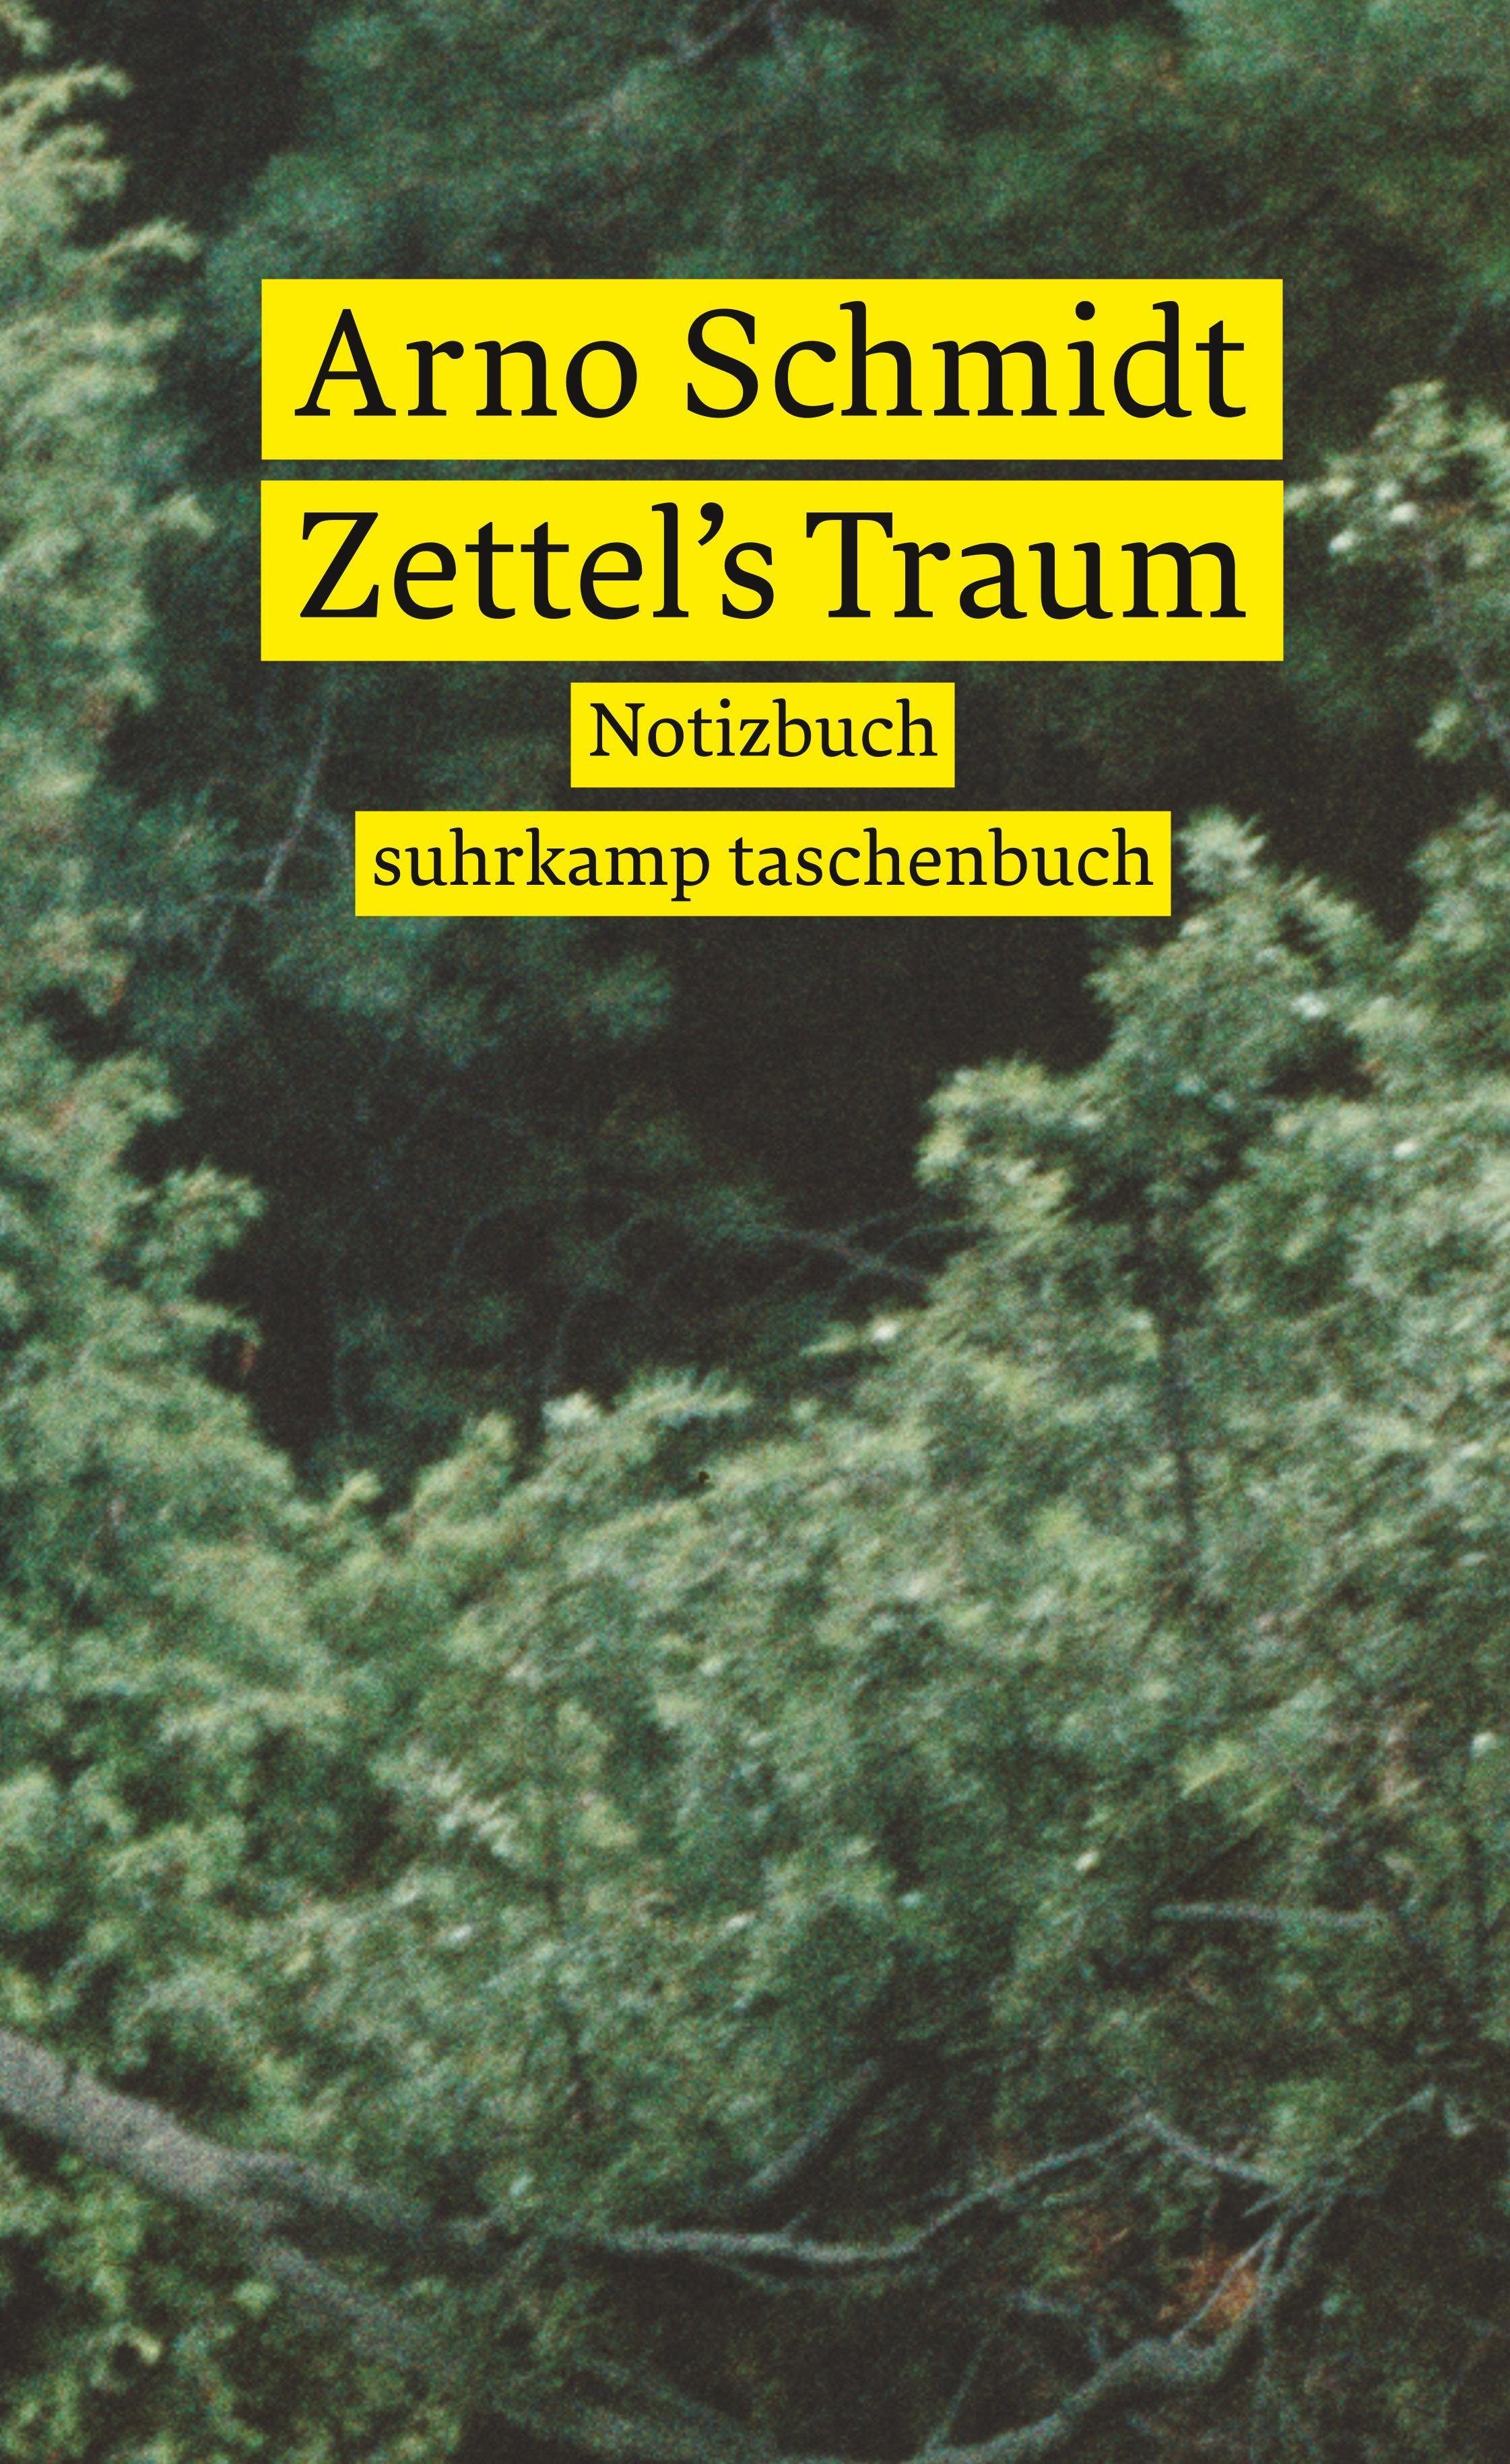 taschenbuch Suhrkamp suhrkamp Notizbuch Notizbuch Verlag